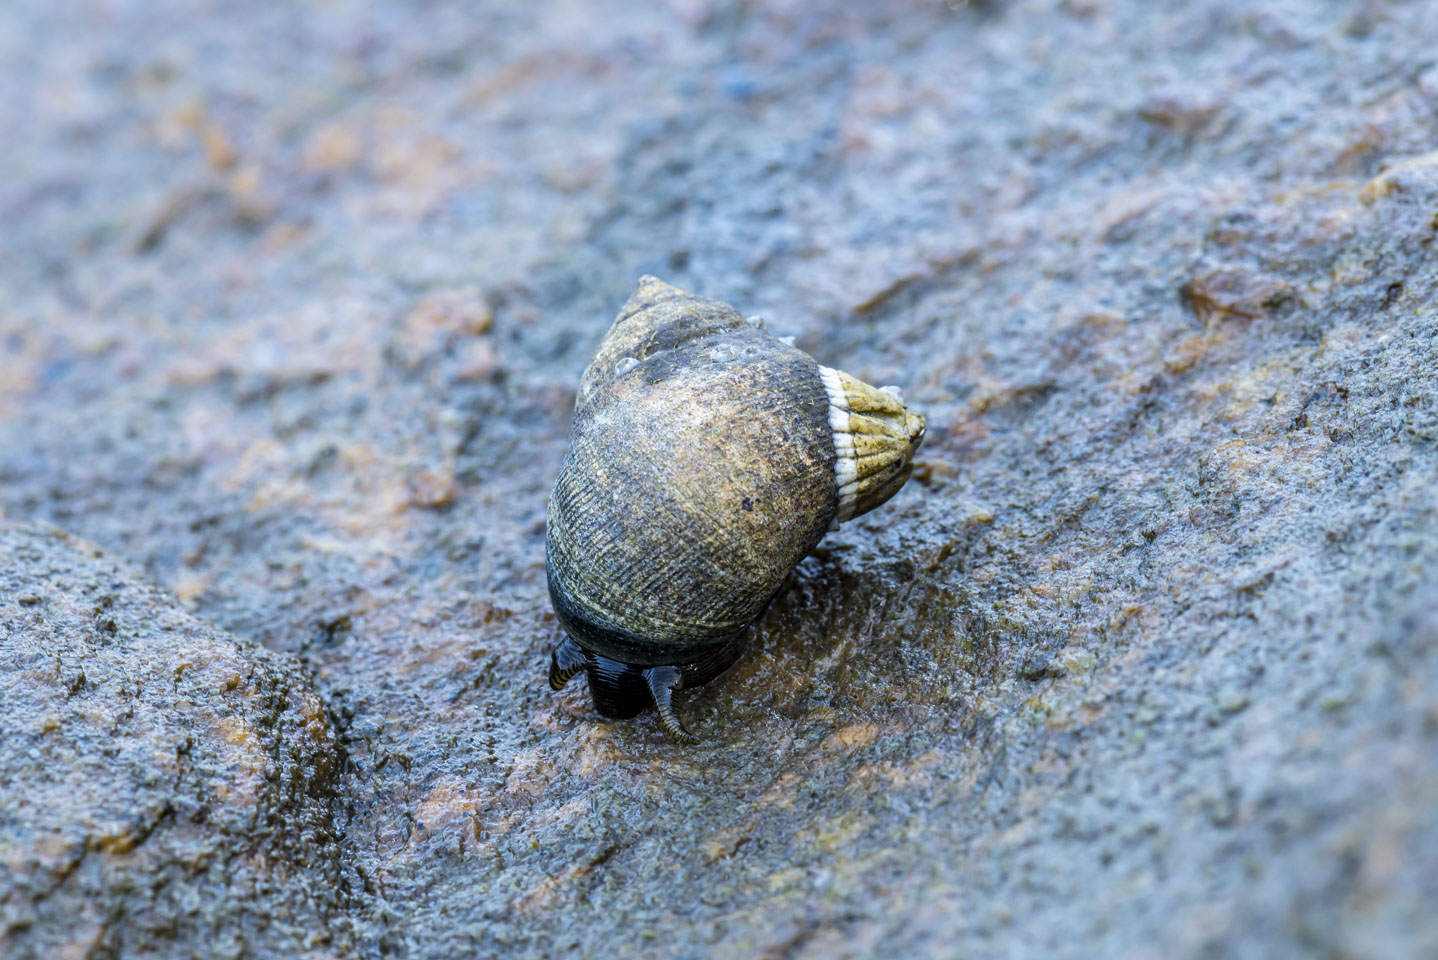 a snail